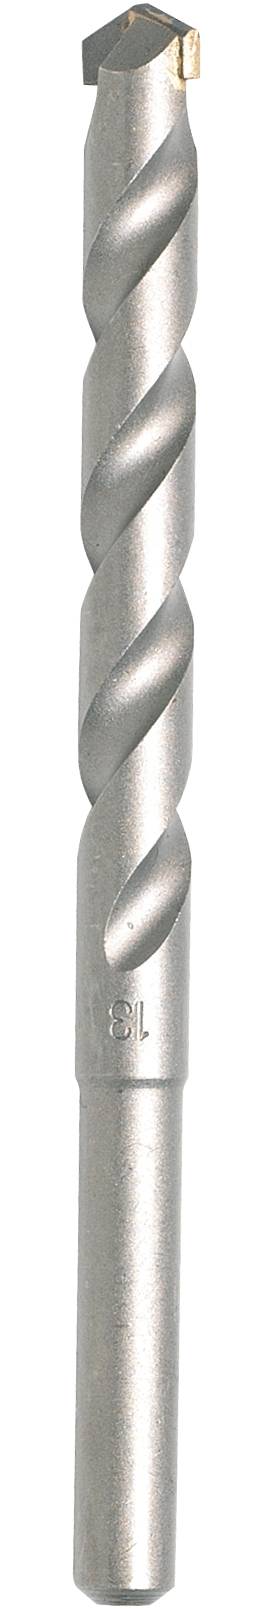 MAKITA Hartmetall Stein-Spiralbohrer 6 mm Makita D-05256 Gesamtlänge 100 mm Zylinderschaft 1 St.